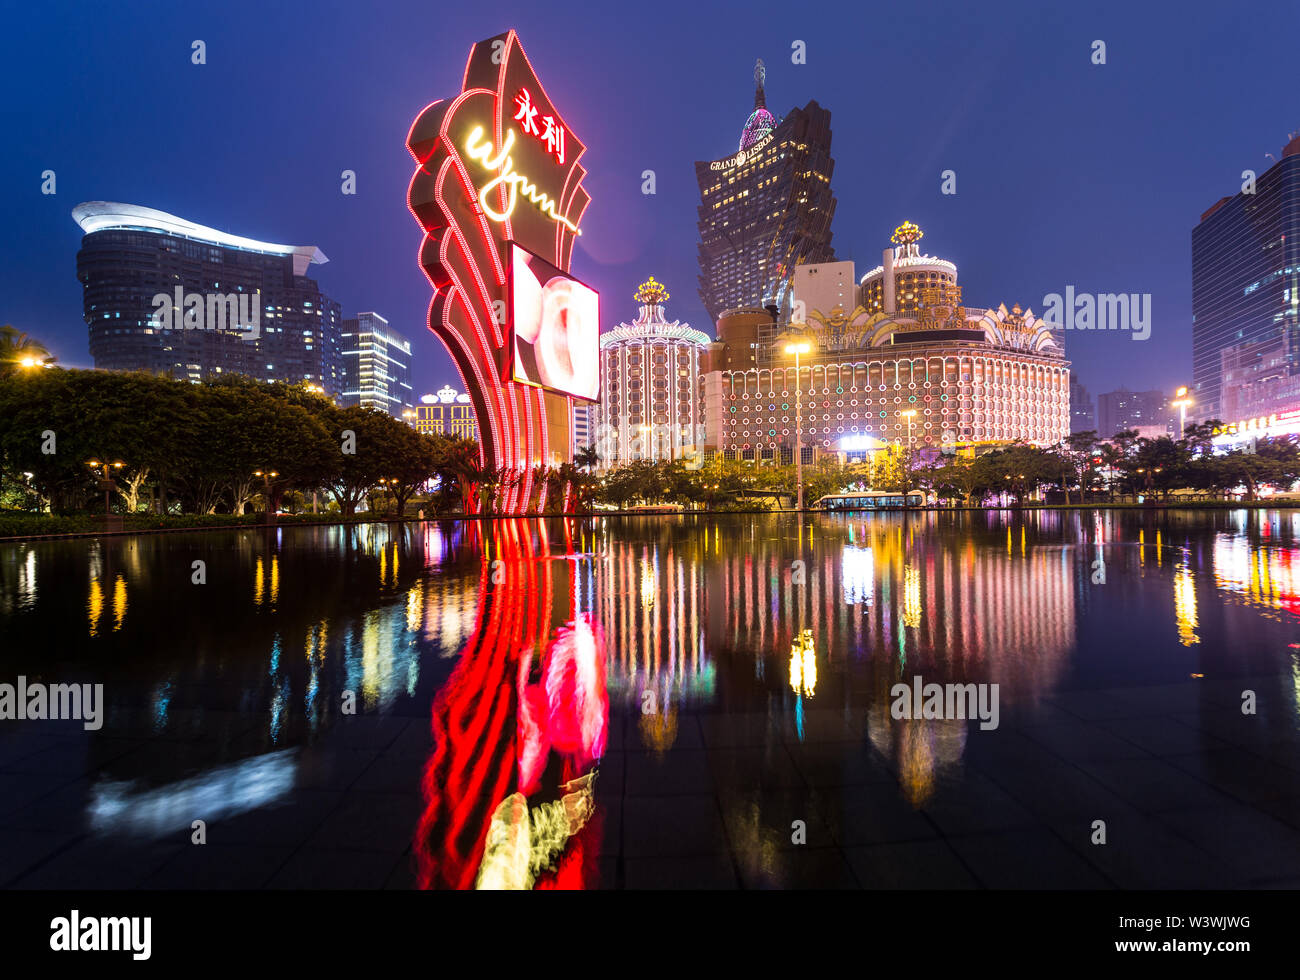 Macao, Chine - 23 avril 2017 : Les feux d'un célèbre opérateur Casino Wynn refléter sur l'eau avec le casino Lisboa tower en arrière-plan. Macao rece Banque D'Images